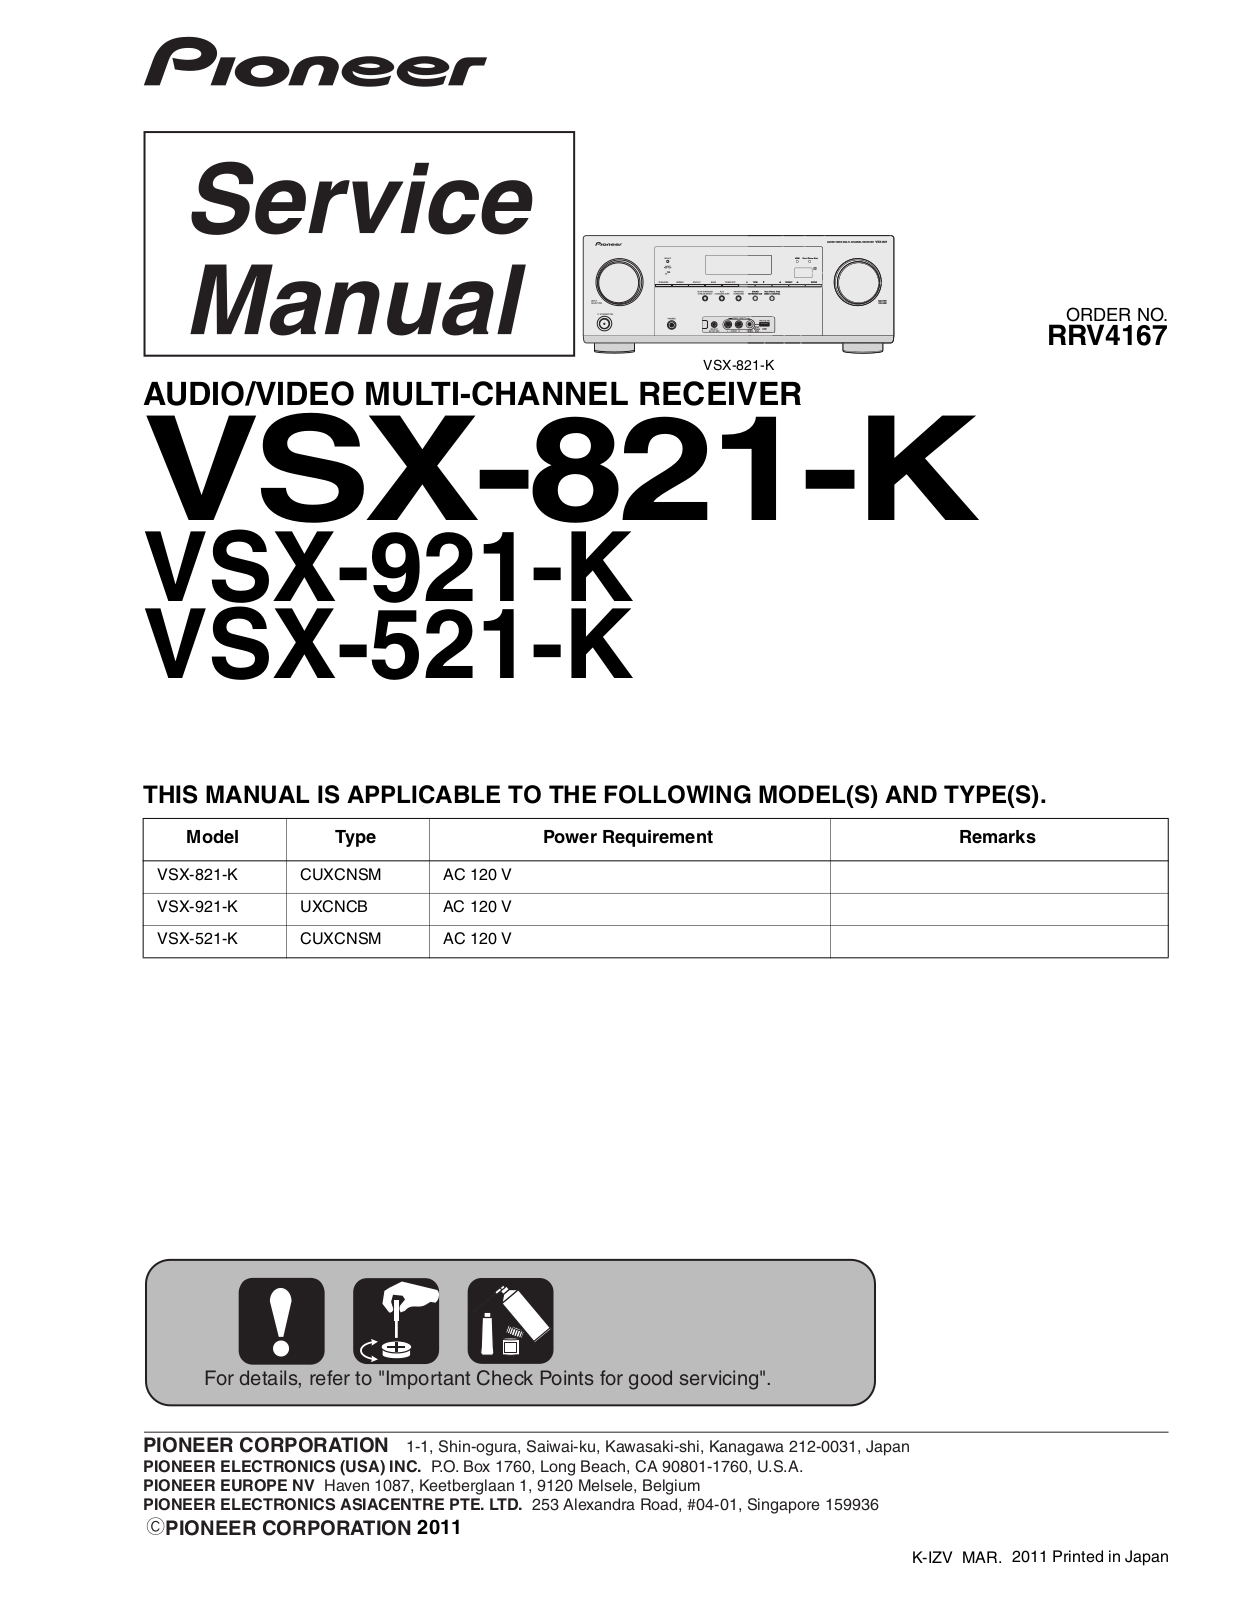 Pioneer VSX-921-K, VSX-821-K, VSX-521-K Service manual